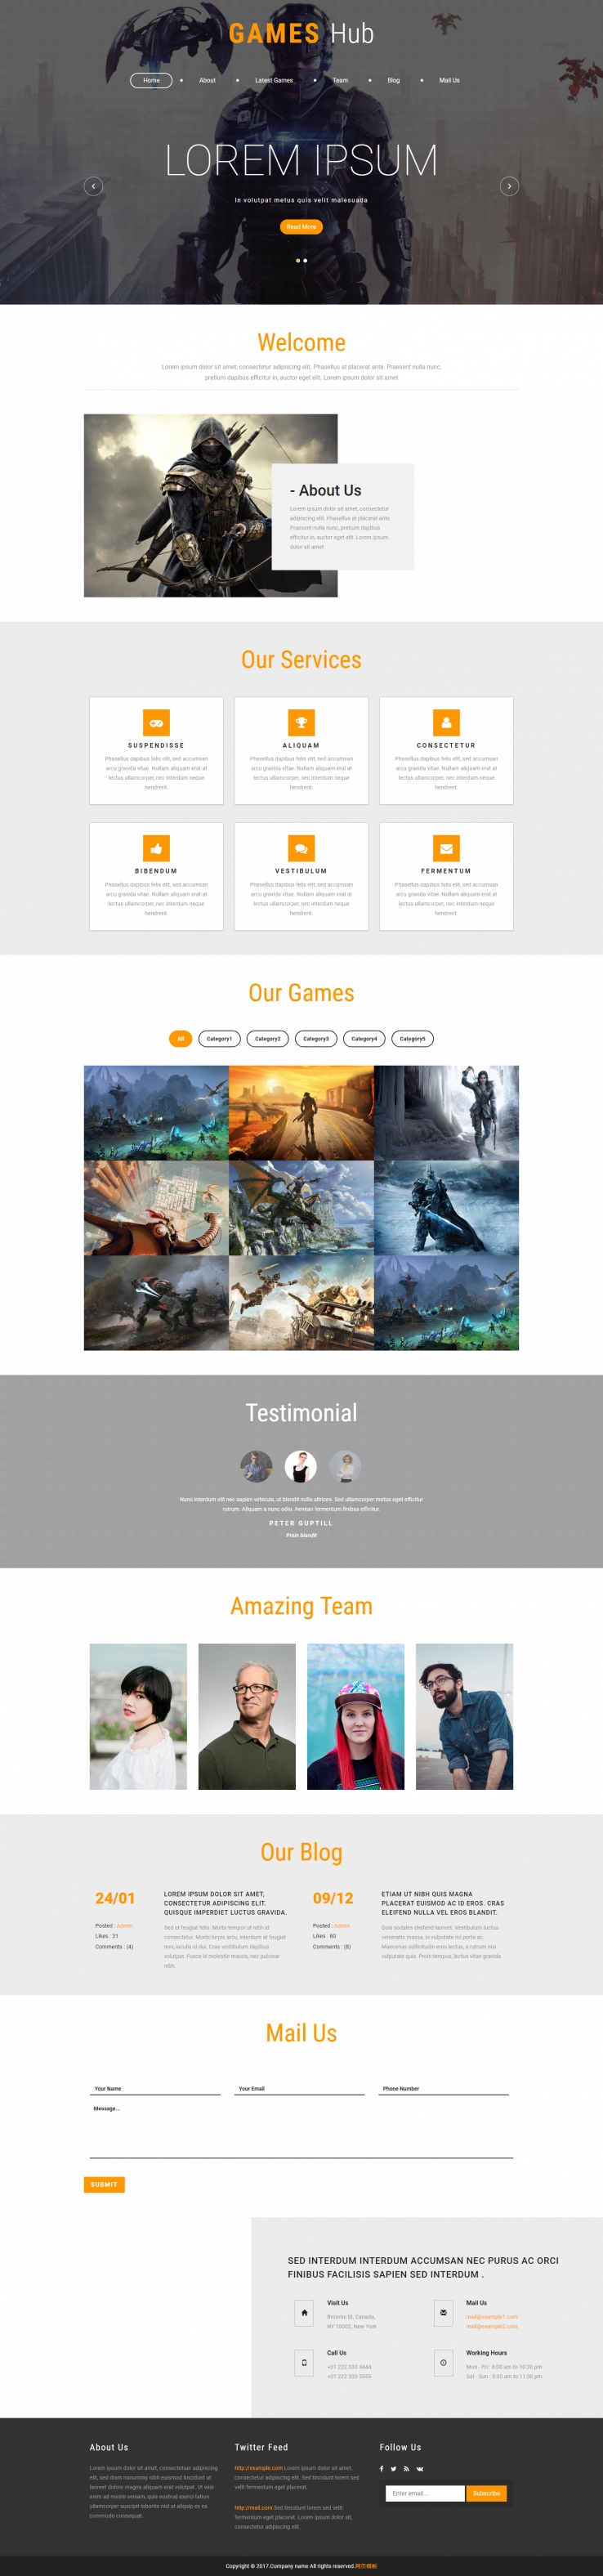 白色宽屏风格的网页游戏开发公司网站模板